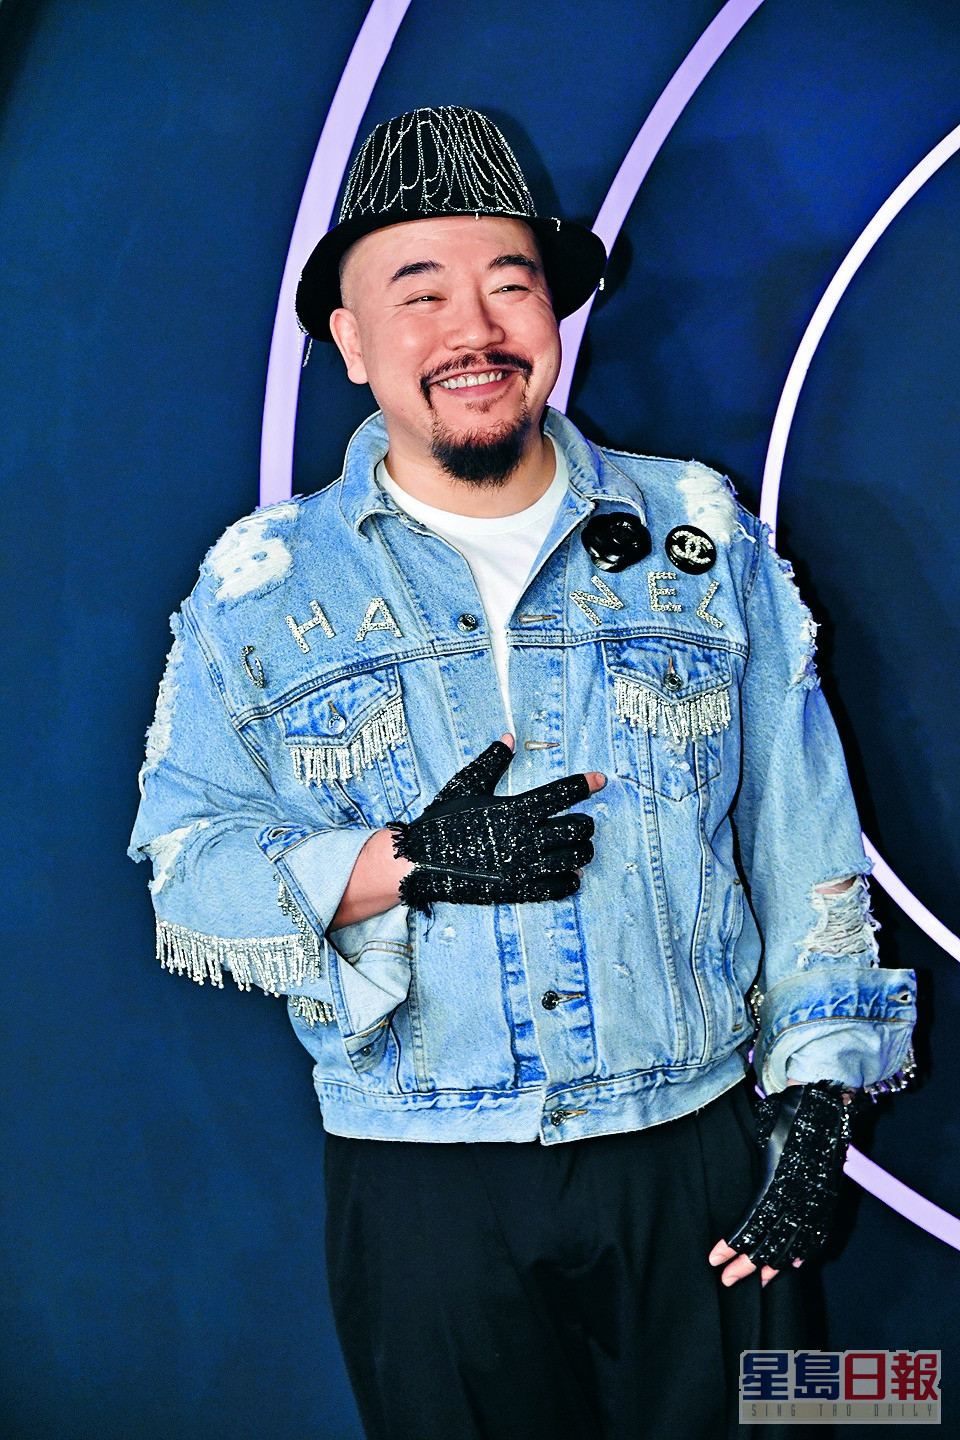 填词人黄伟文将歌曲取名为《猥琐》，保锜表示不知对方是否觉得他猥琐。